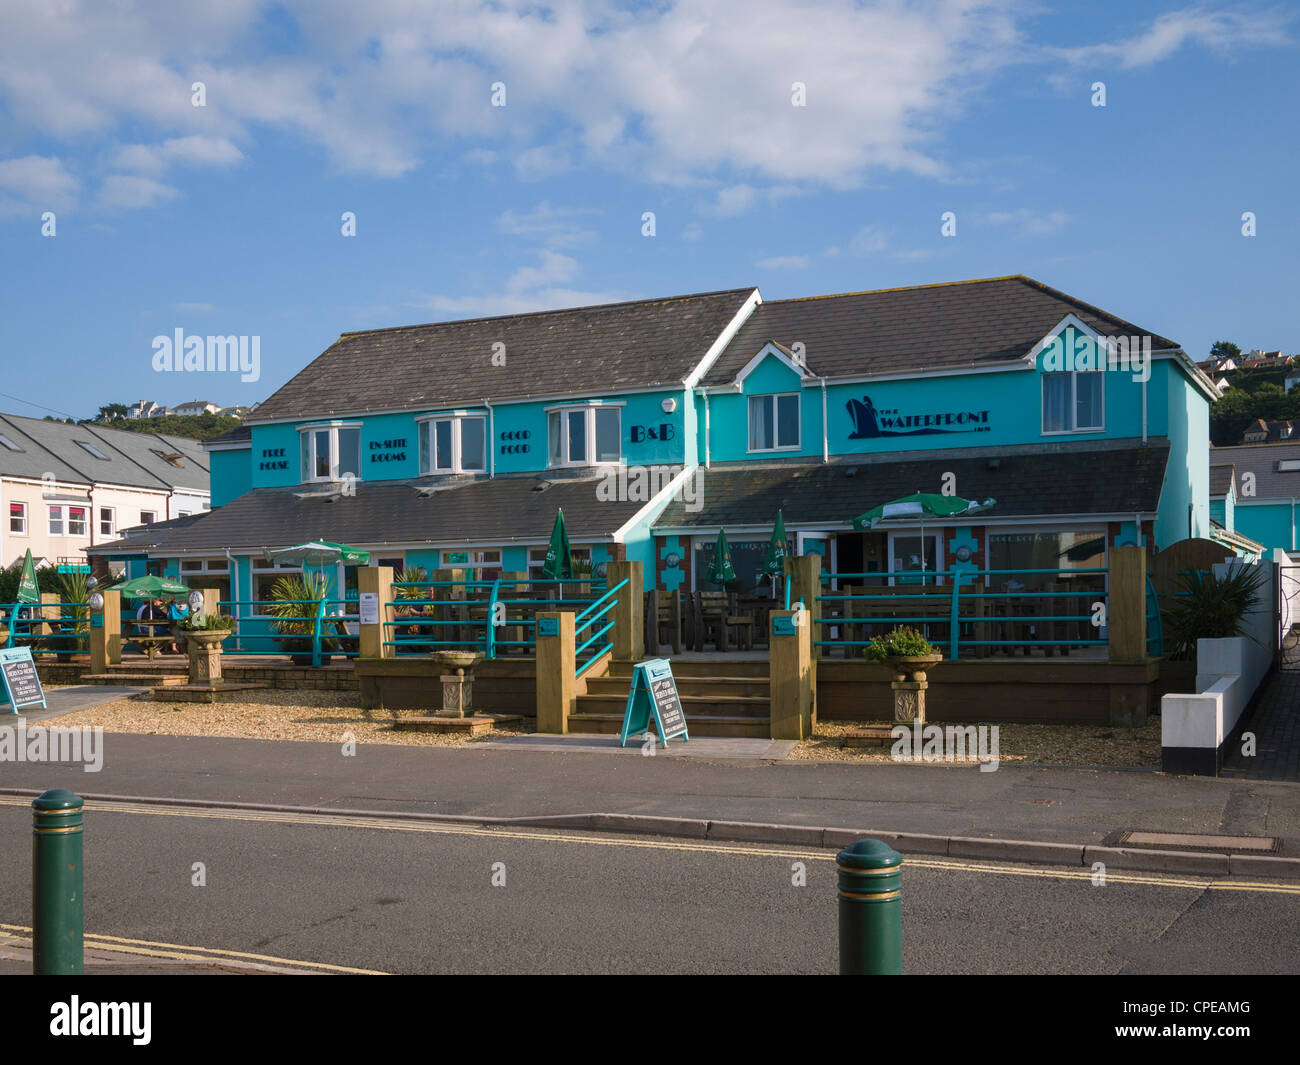 The Waterfront Inn presso la località balneare di Westward ho!, Devon, Inghilterra. Foto Stock